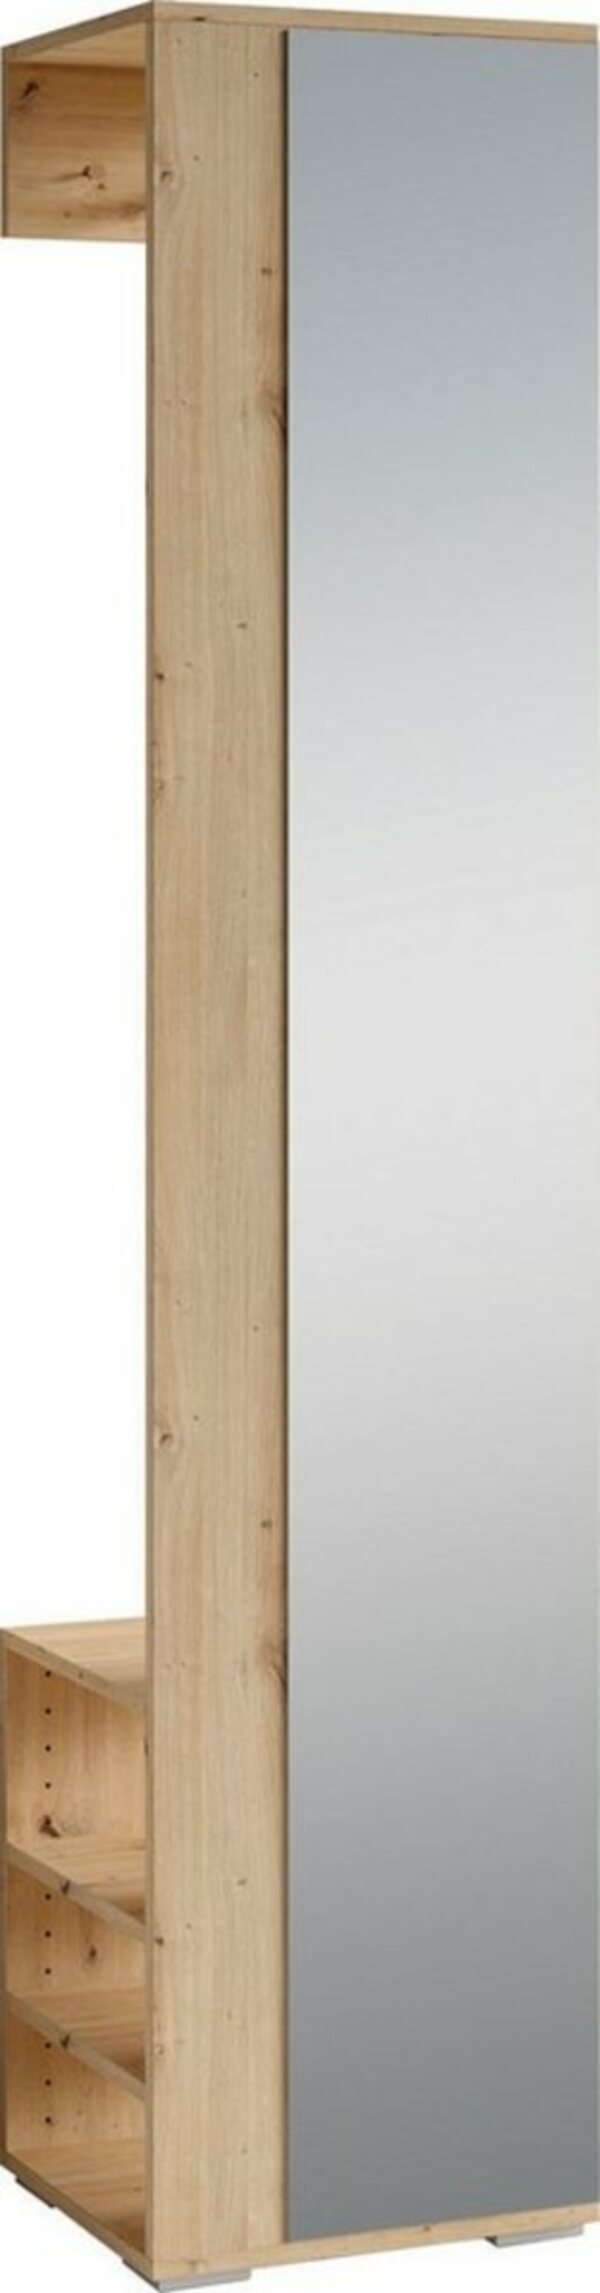 Bild 1 von byLIVING Garderobenpaneel »Ben« (1 Stück), Breite 40 cm, mit Spiegel und Kleiderstange